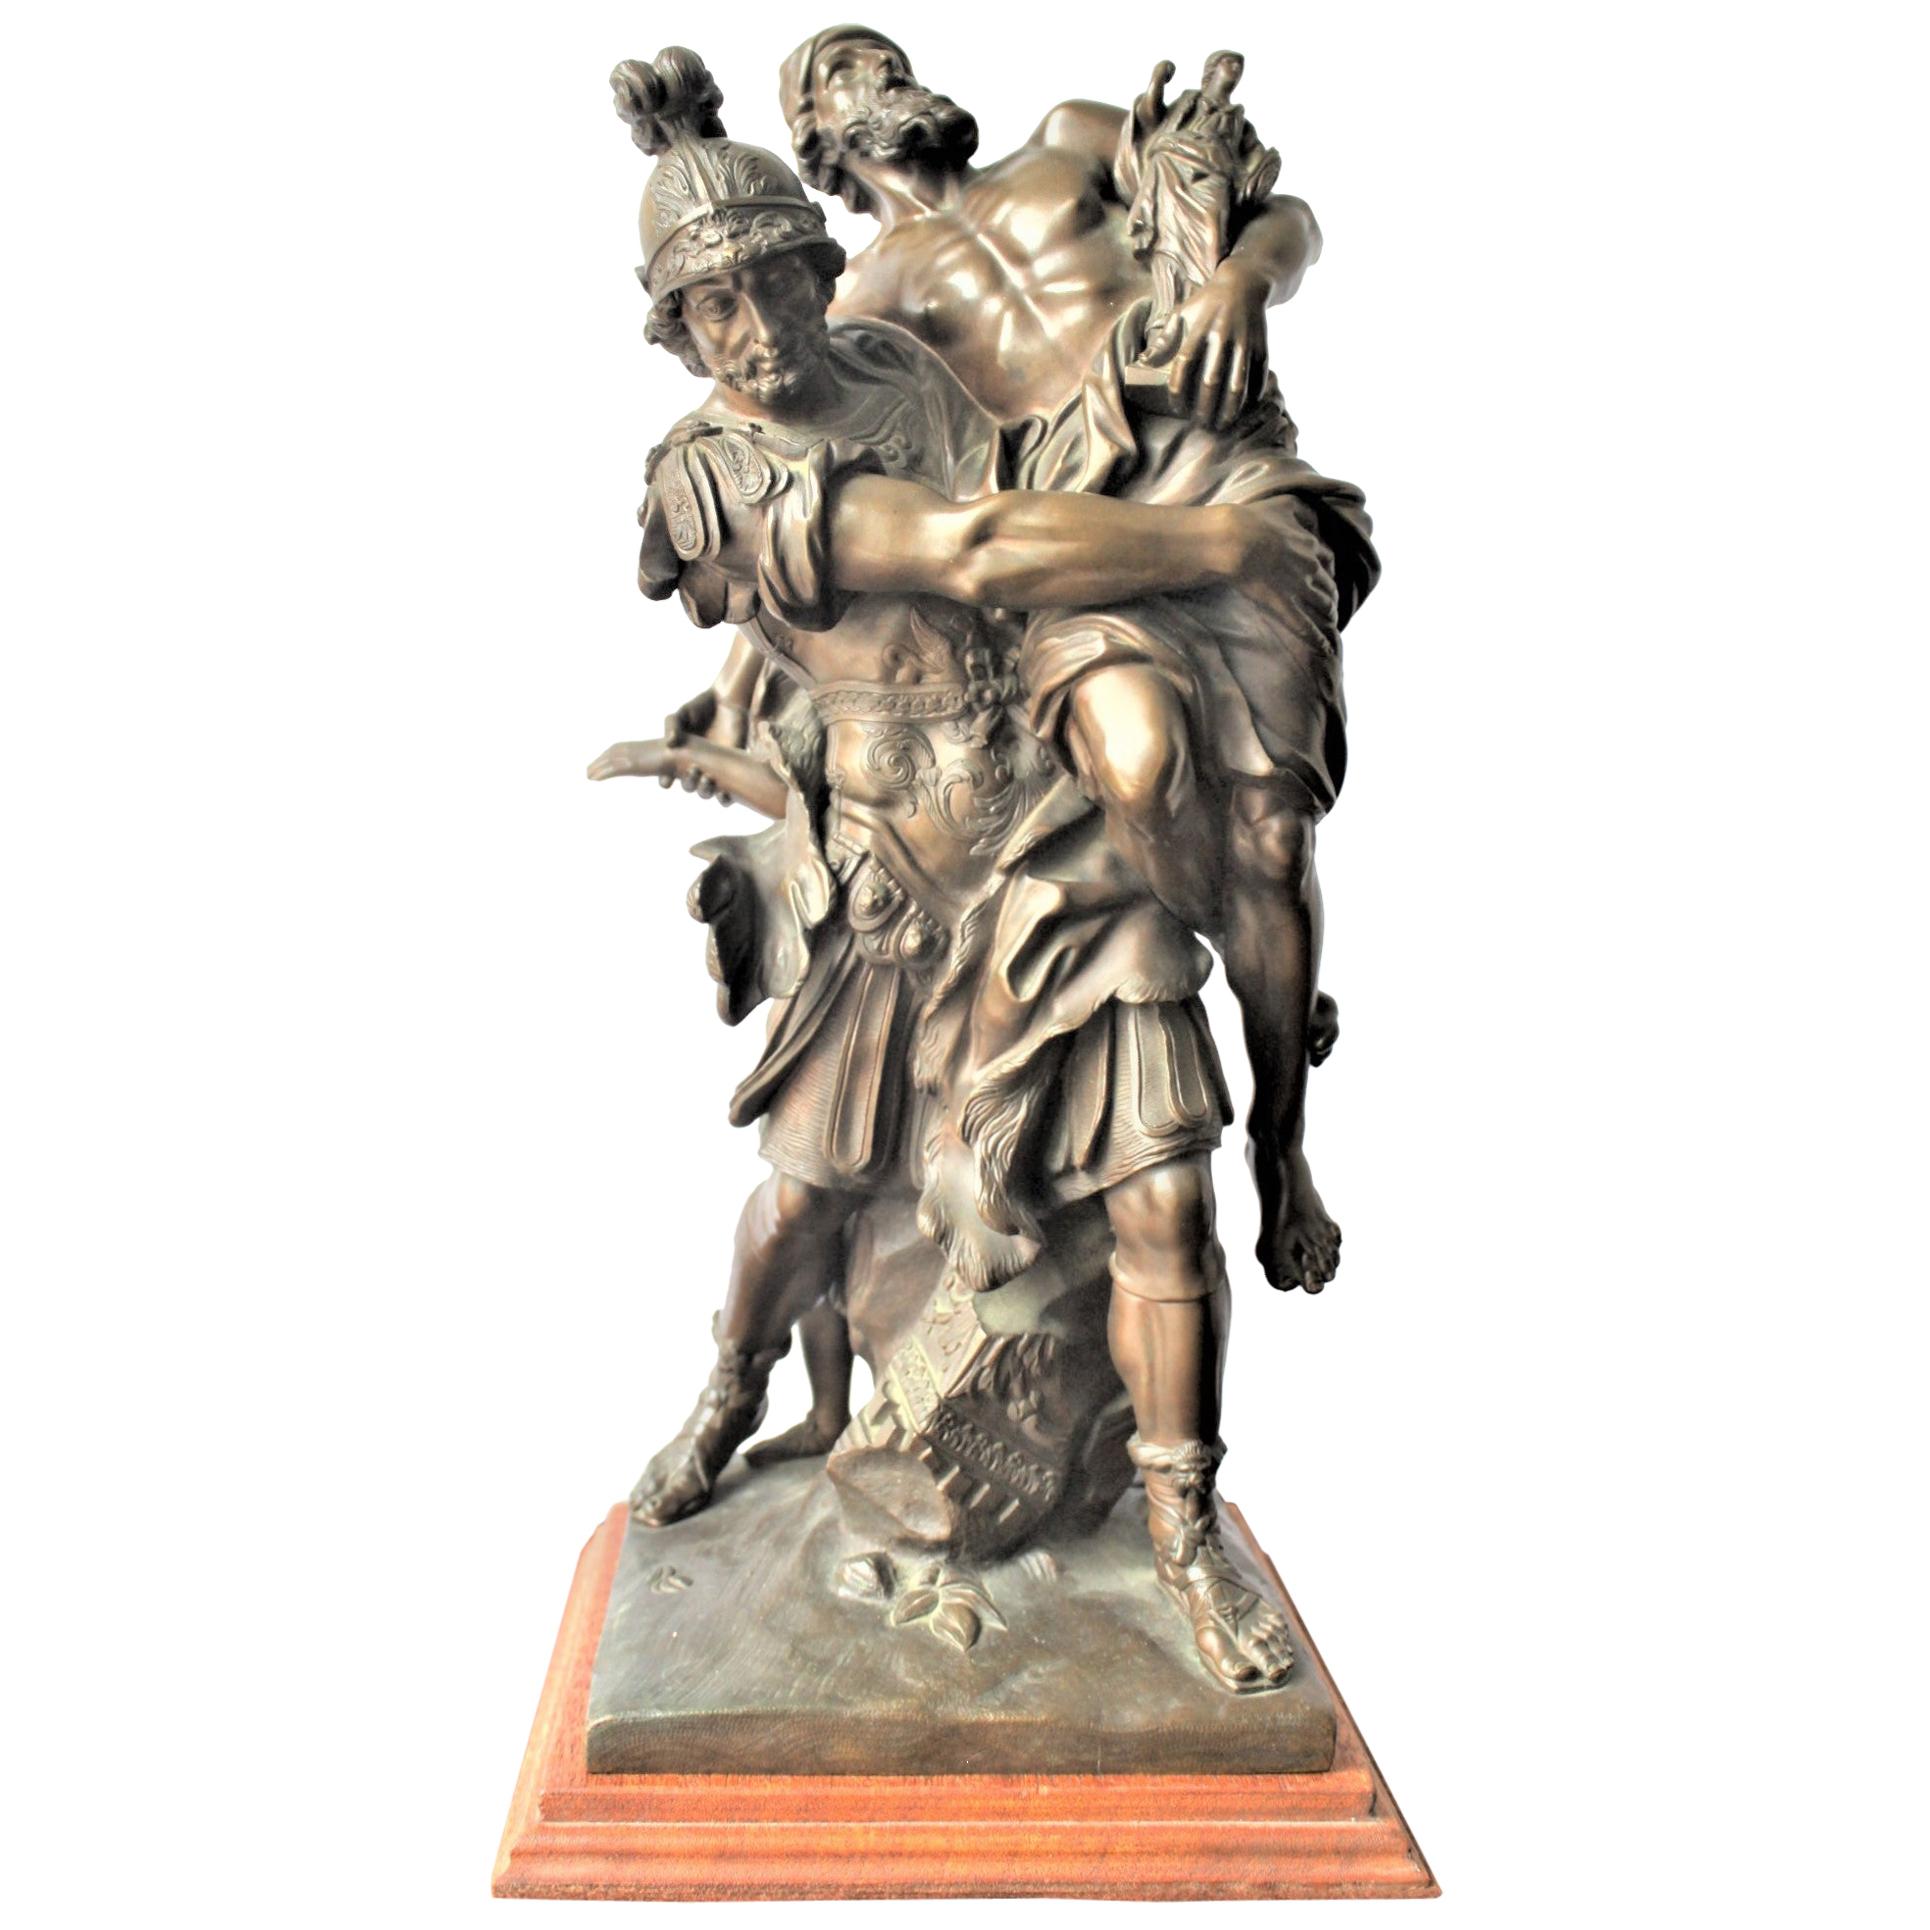 Ancienne sculpture française en bronze de style néoclassique de style néoclassique représentant une mythologie grecque